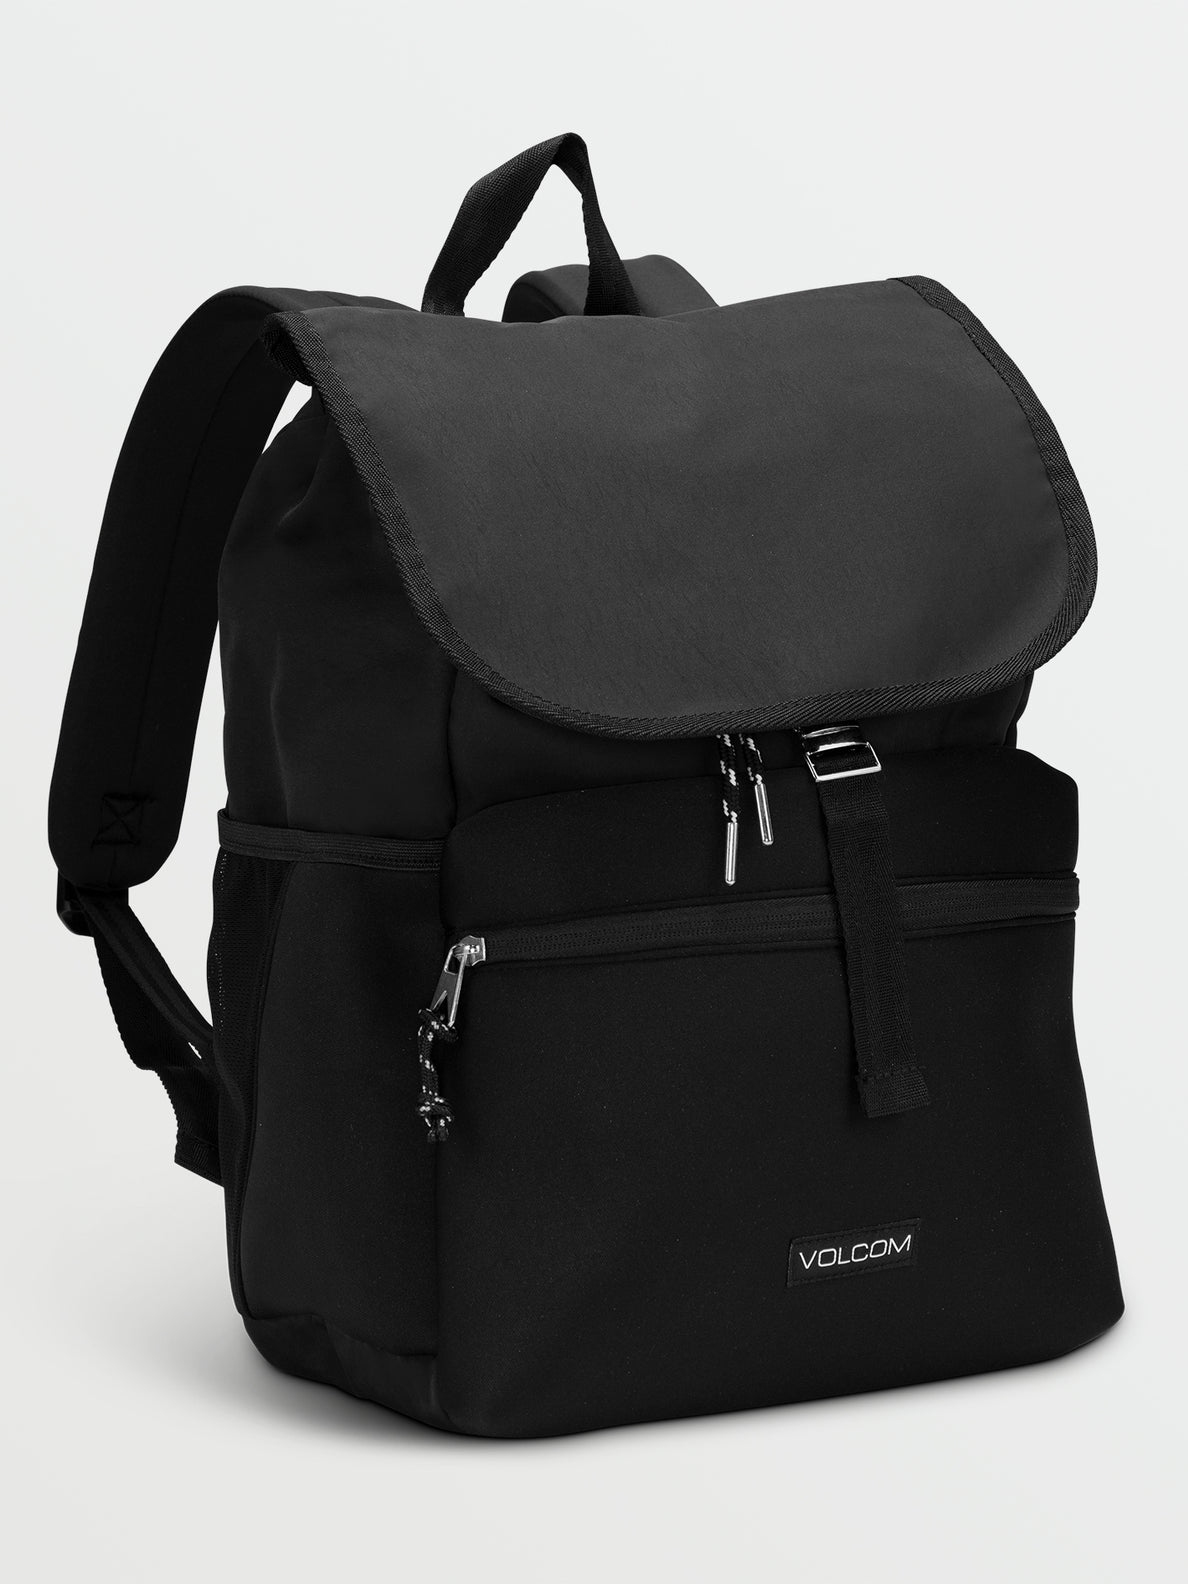 So Jaded Backpack - Black